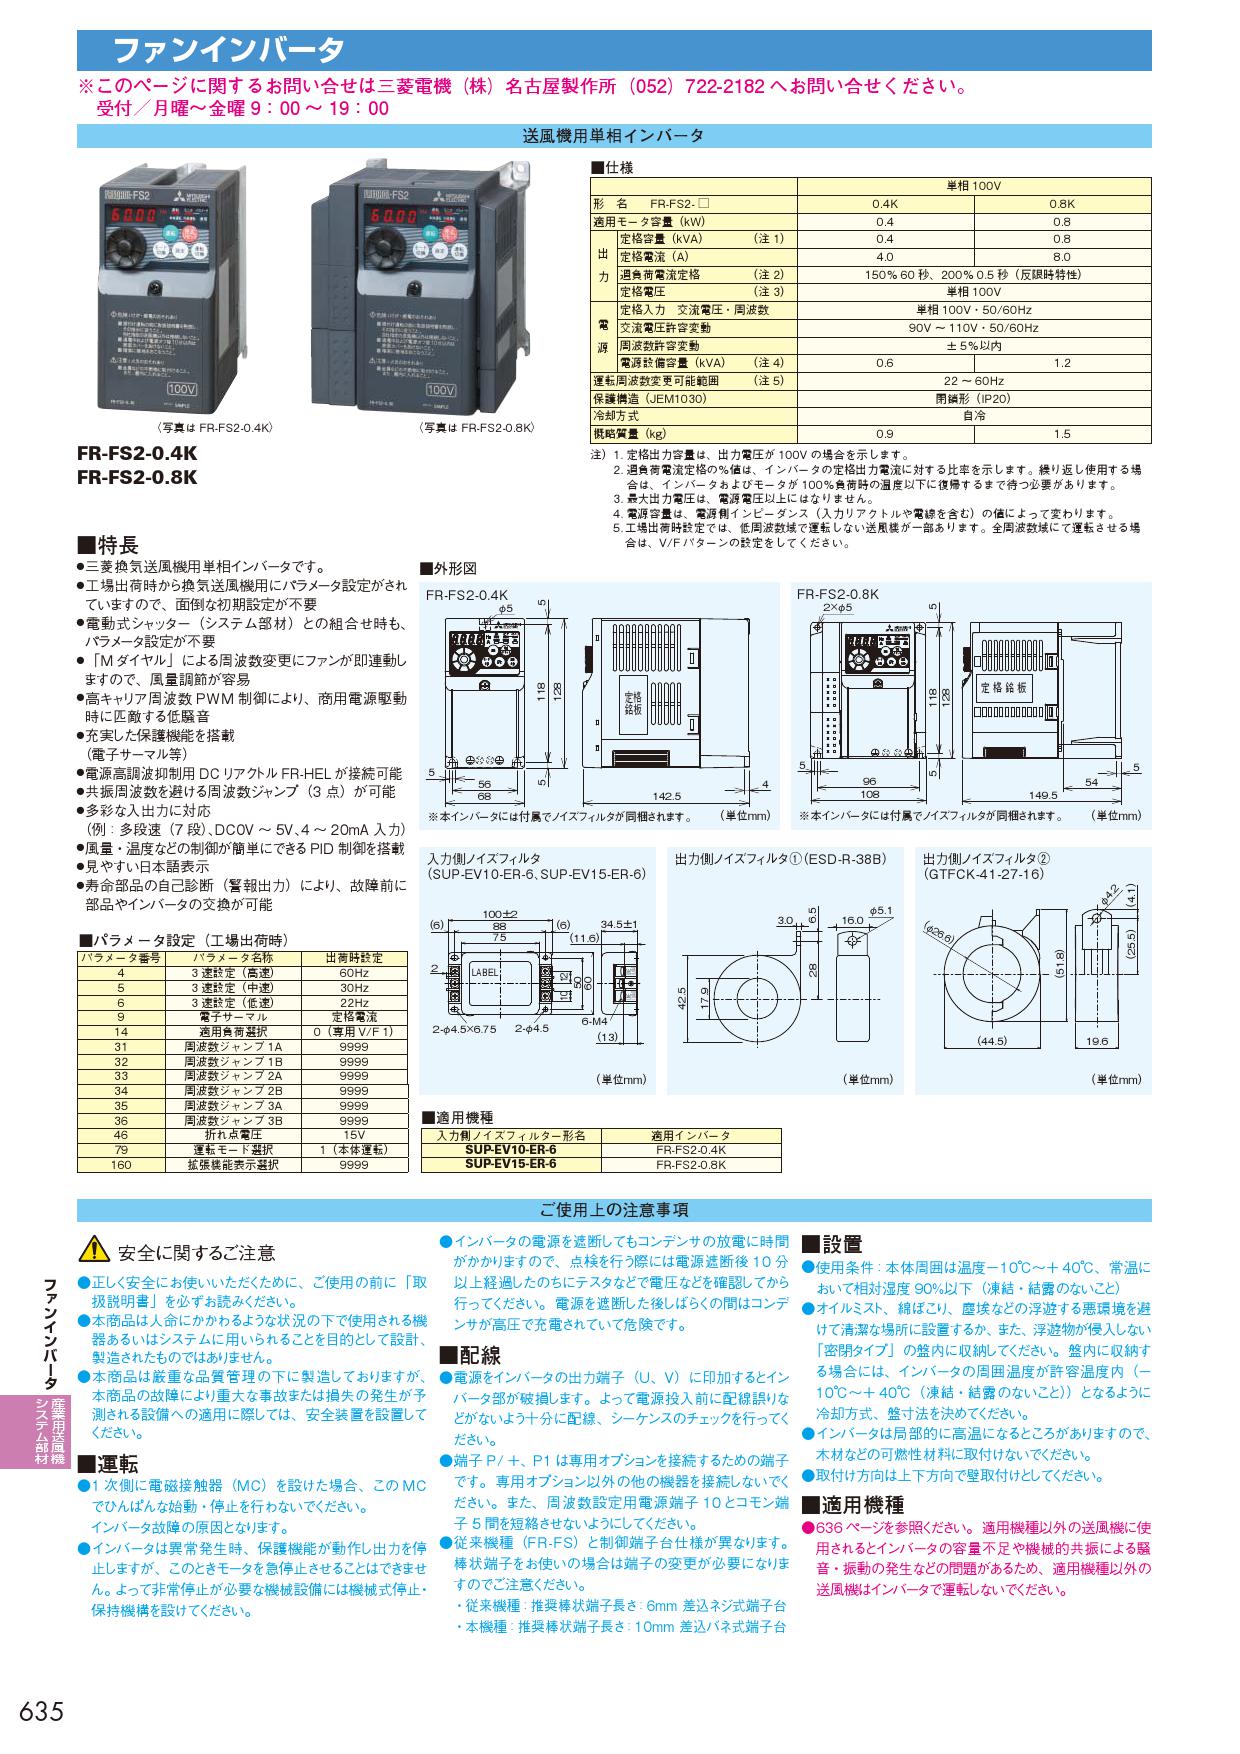 三菱電機 インバーター FR-D720S-2.2K - 2